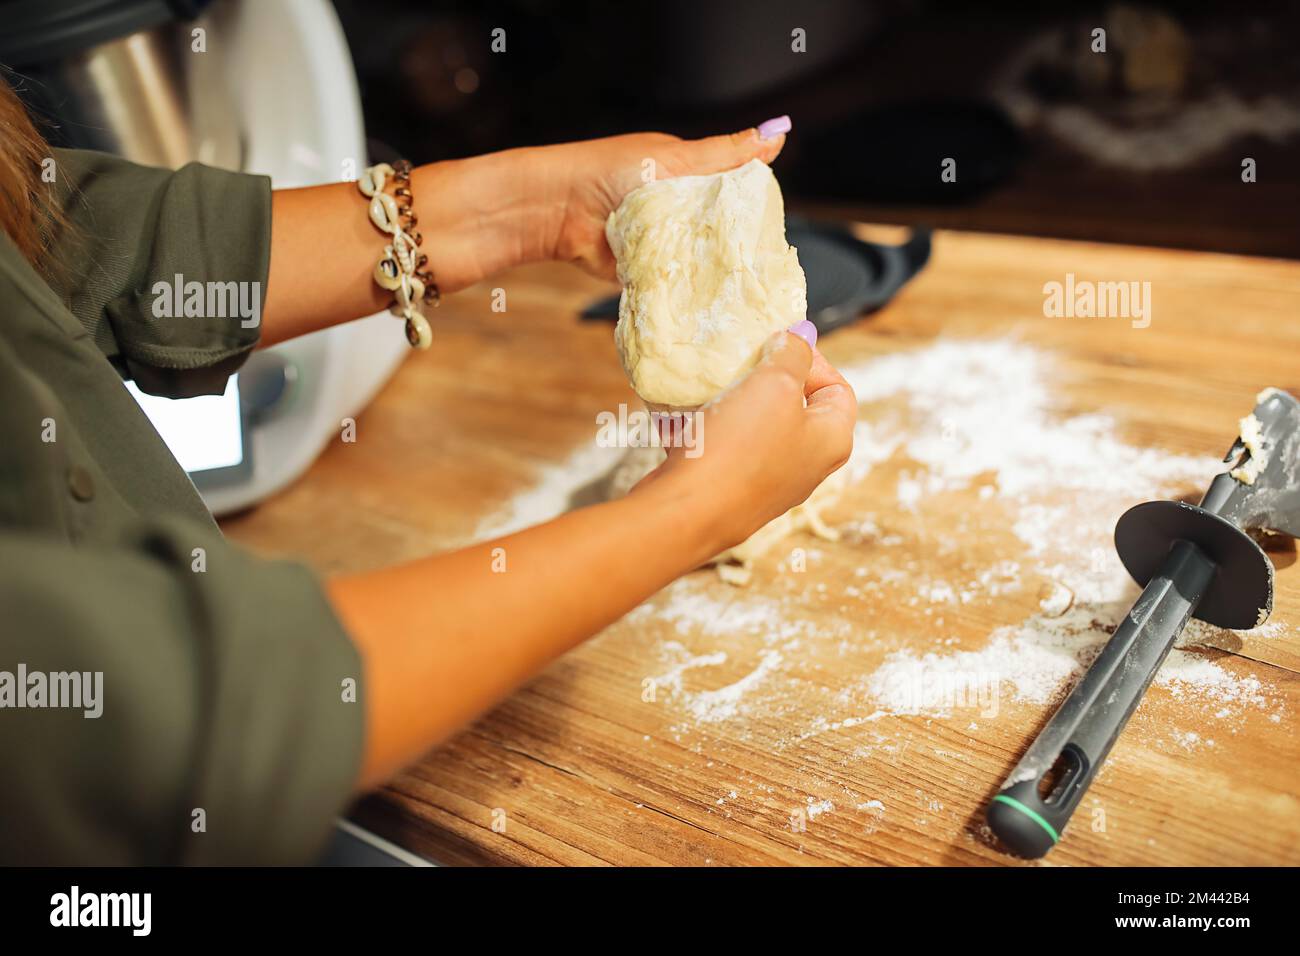 Die Hände einer Frau kneten den viskosen Teig durch Nahaufnahme der Hände. Kochen auf Holzablagefläche zu Hause. Traditionelles Gebäck backen. Stockfoto